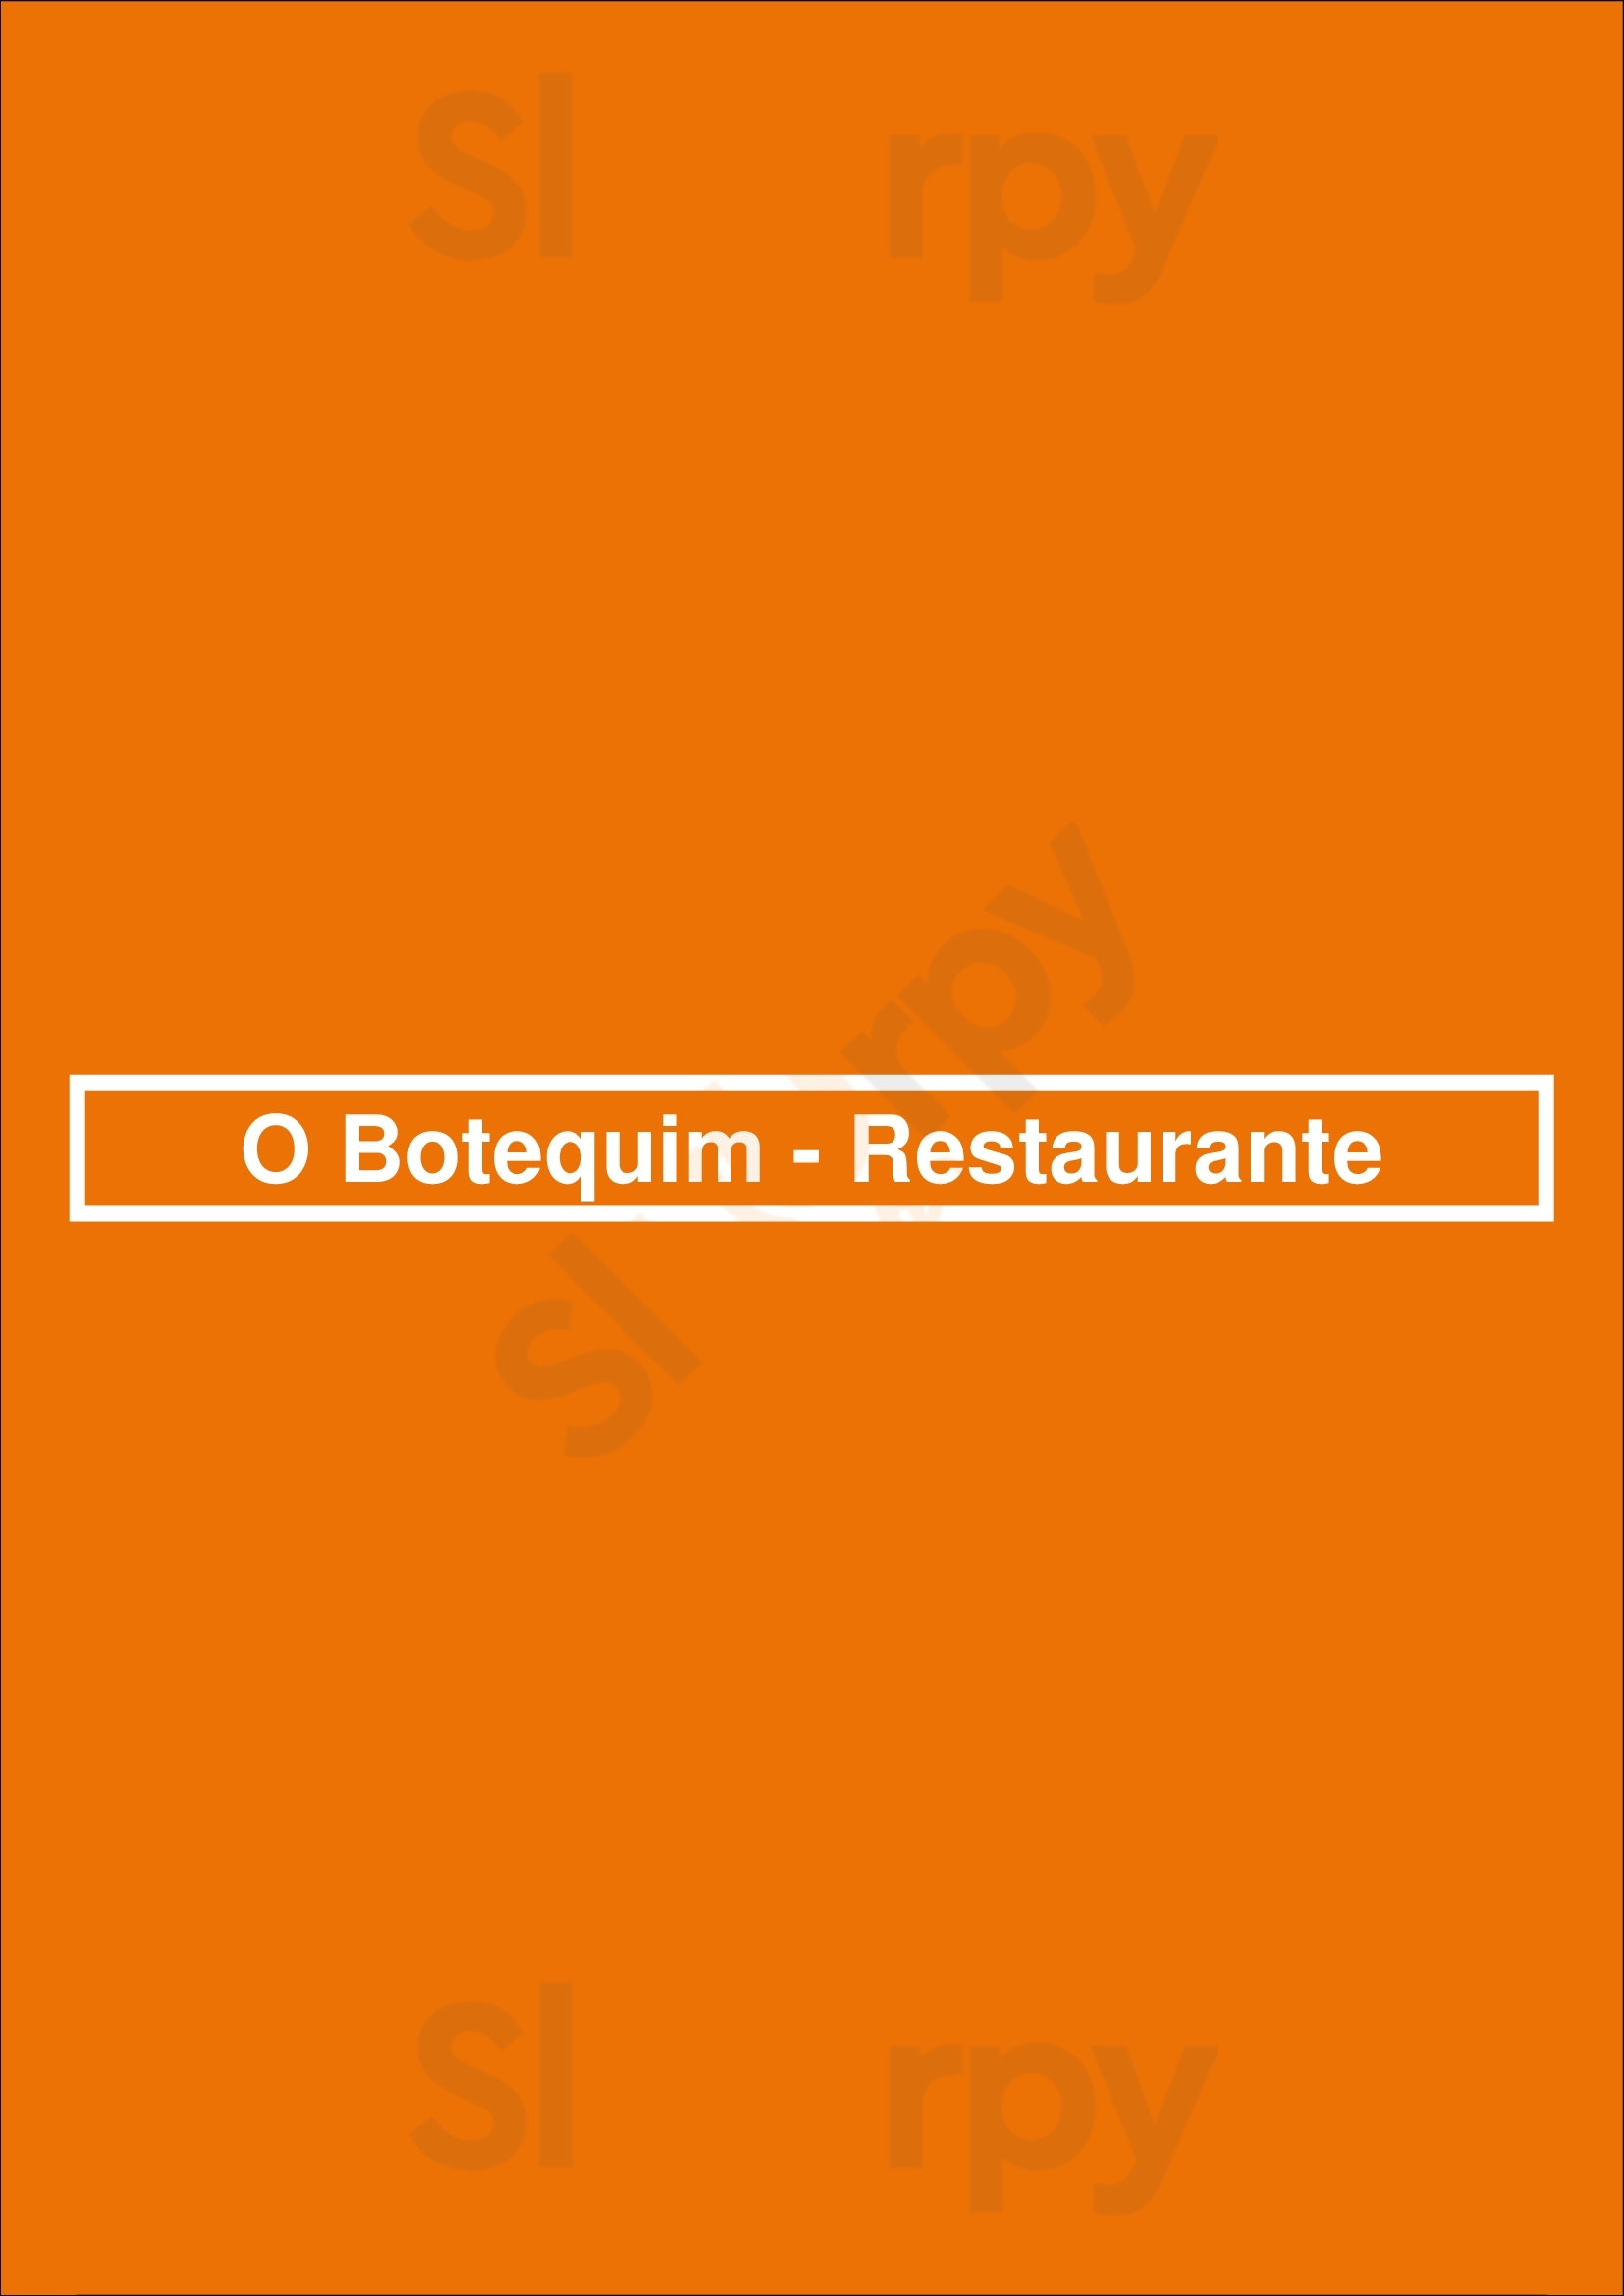 O Botequim - Restaurante Viana do Castelo Menu - 1